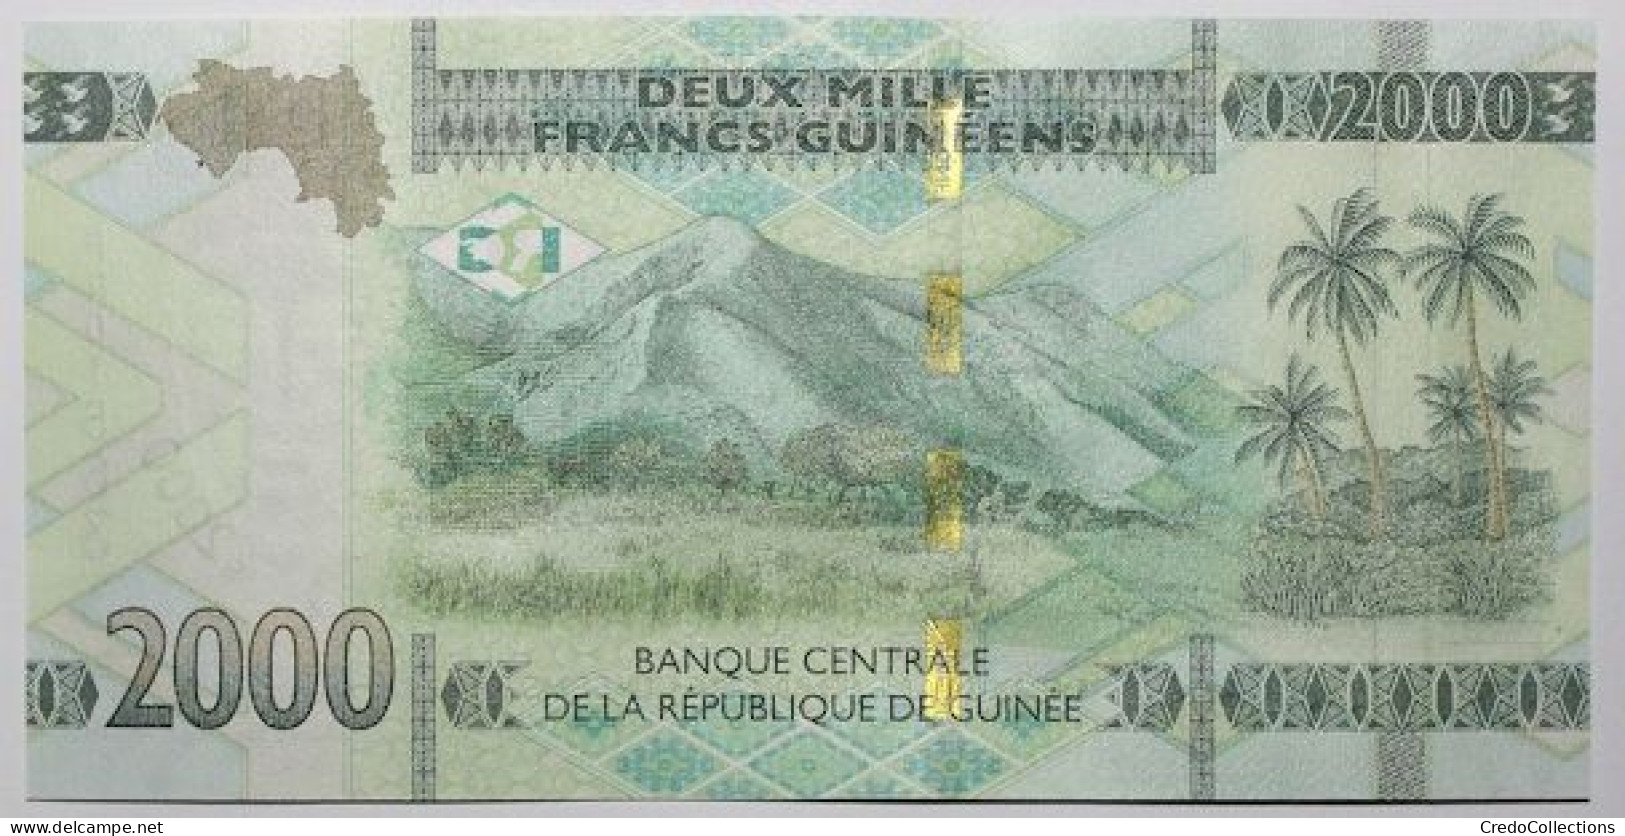 Guinée - 2000 Francs Guinéens - 2022 - PICK 48Ab - NEUF - Guinea